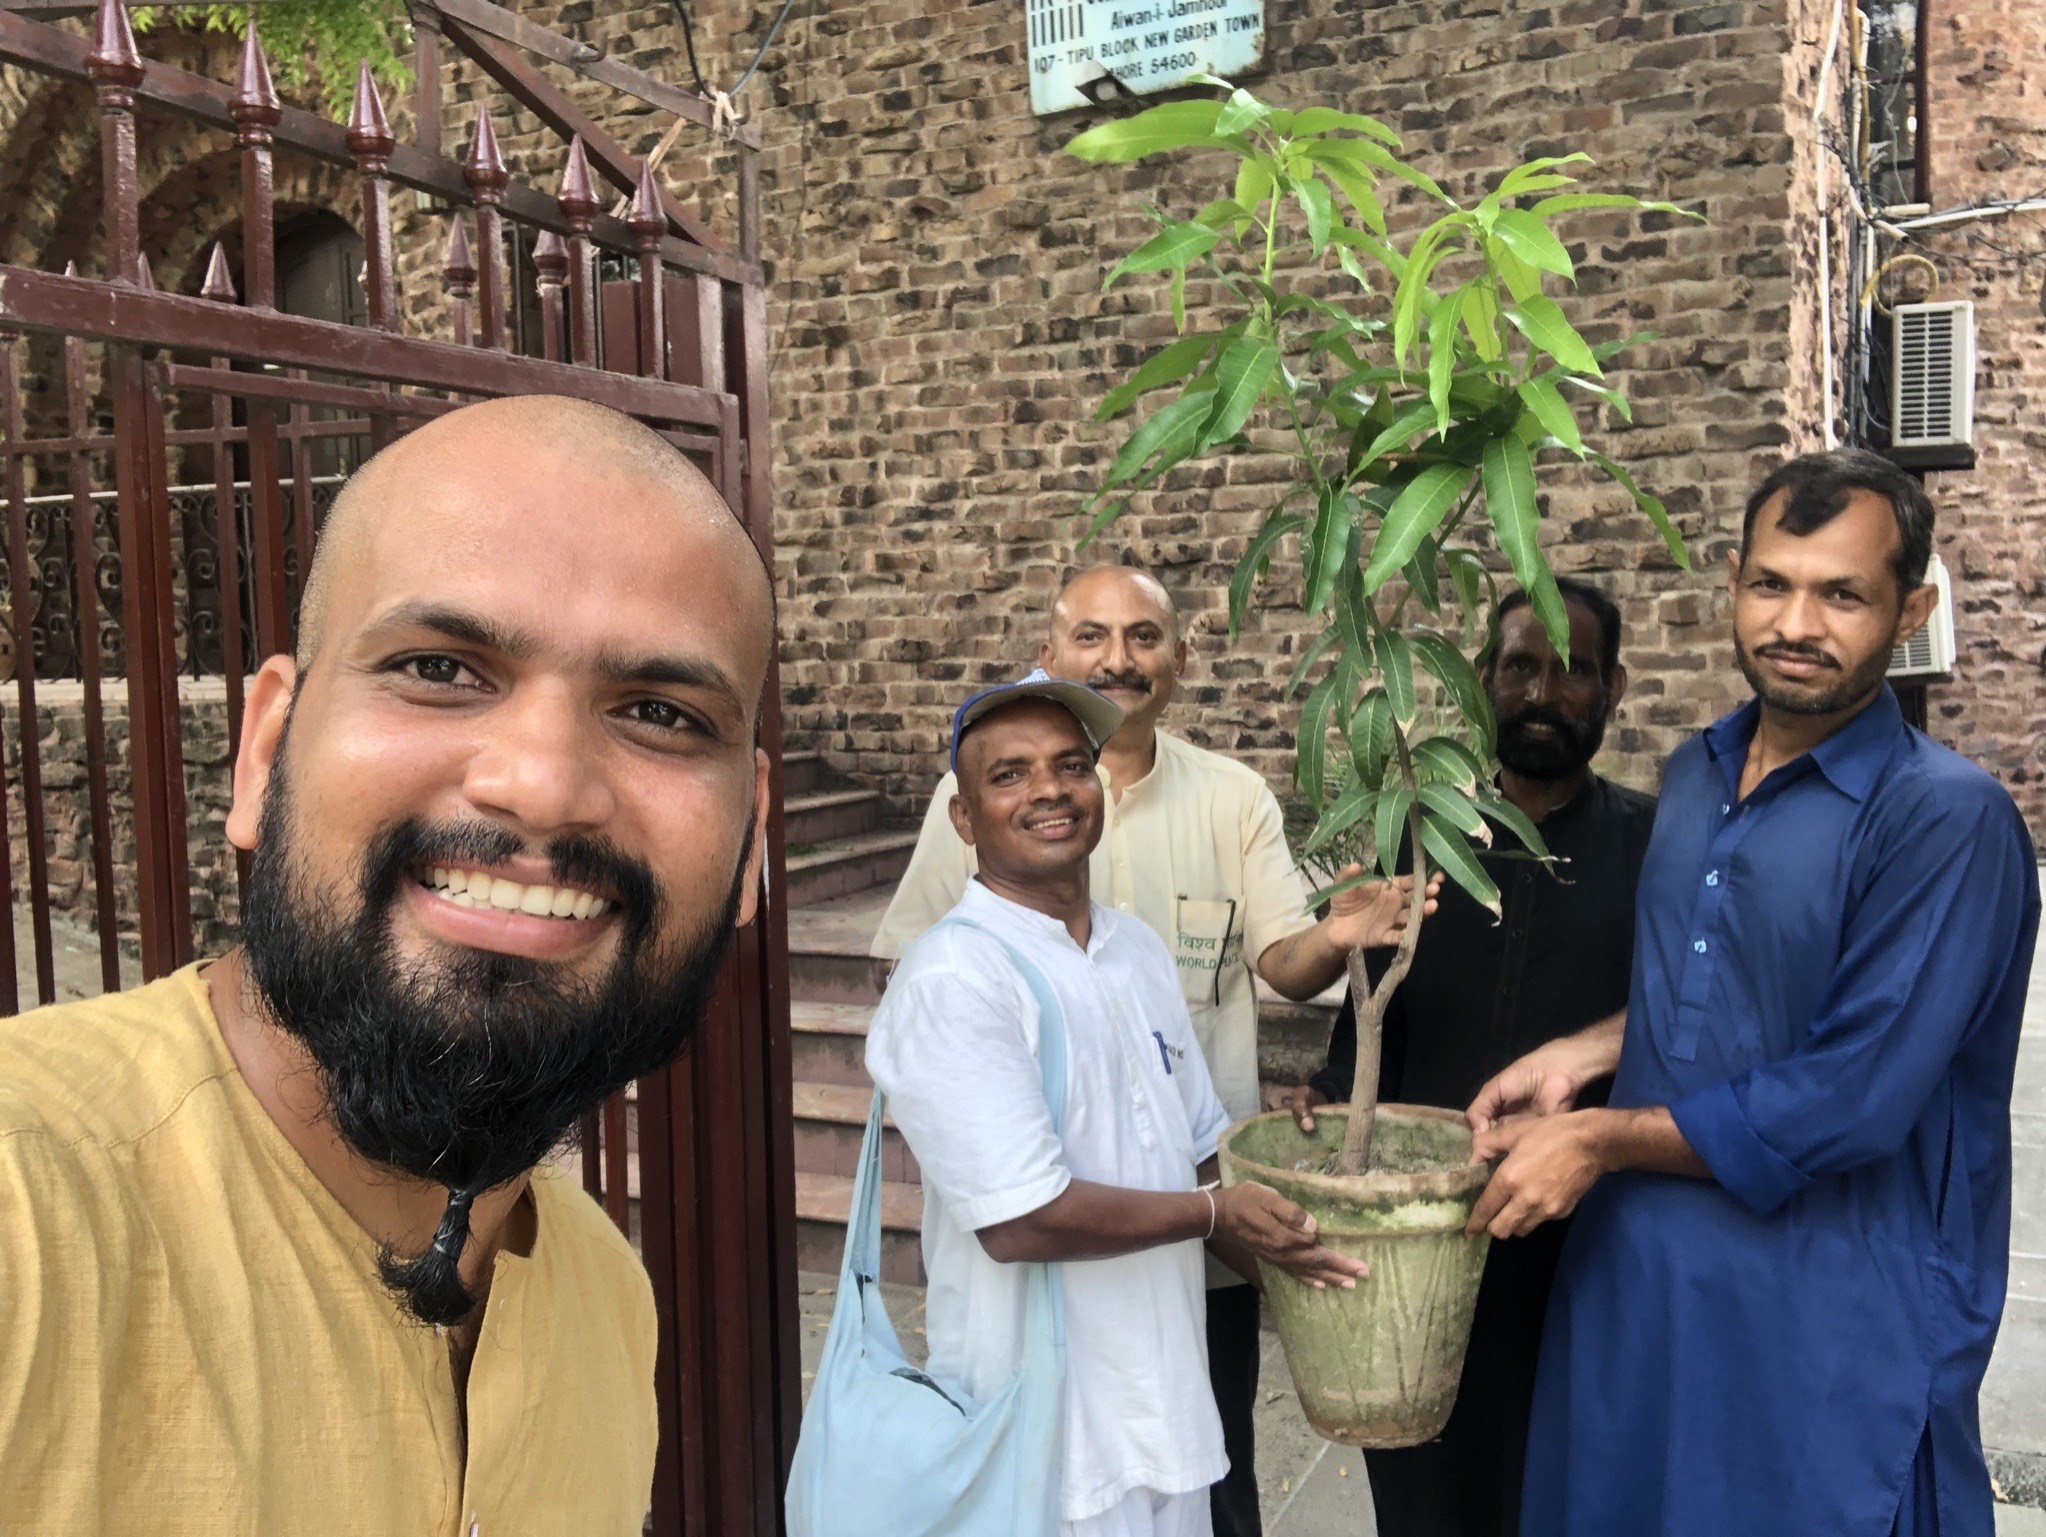 ہندوستان اور پاکستان کے امن کے سفیر اور آم کا پودا، فوٹو: انڈیا پیس واکرز